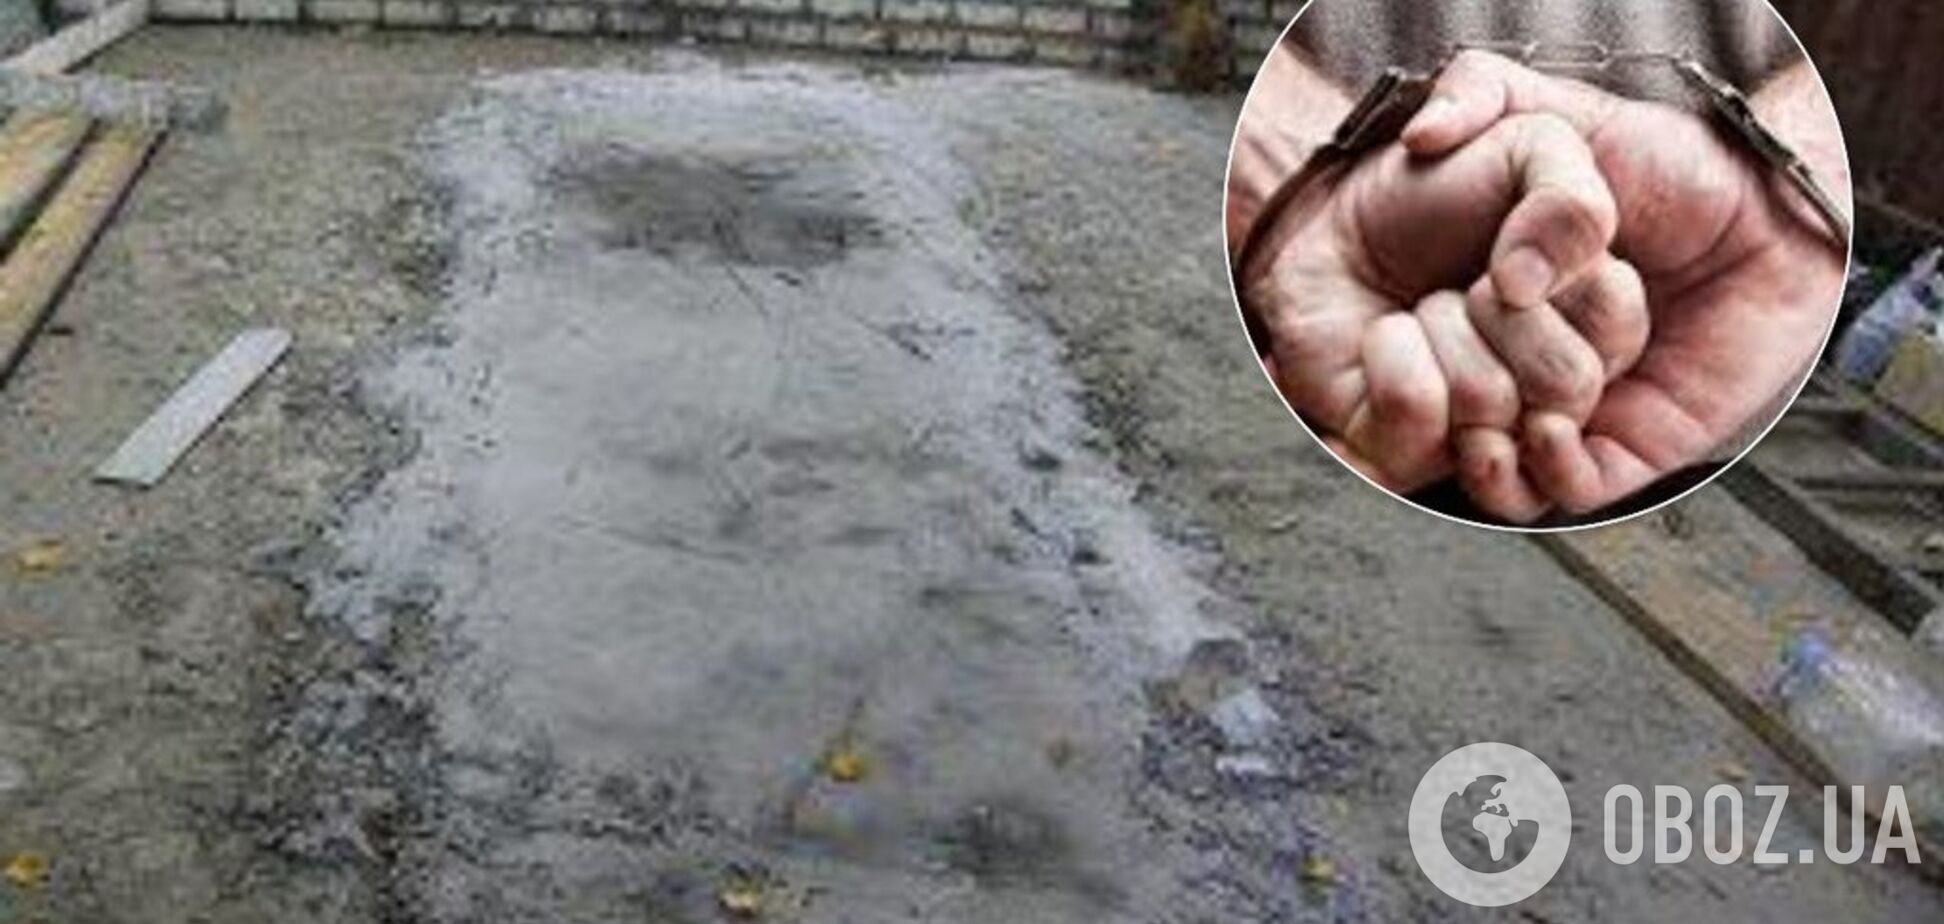 Закатали тіло в бетон: у Росії сталося жахливе вбивство